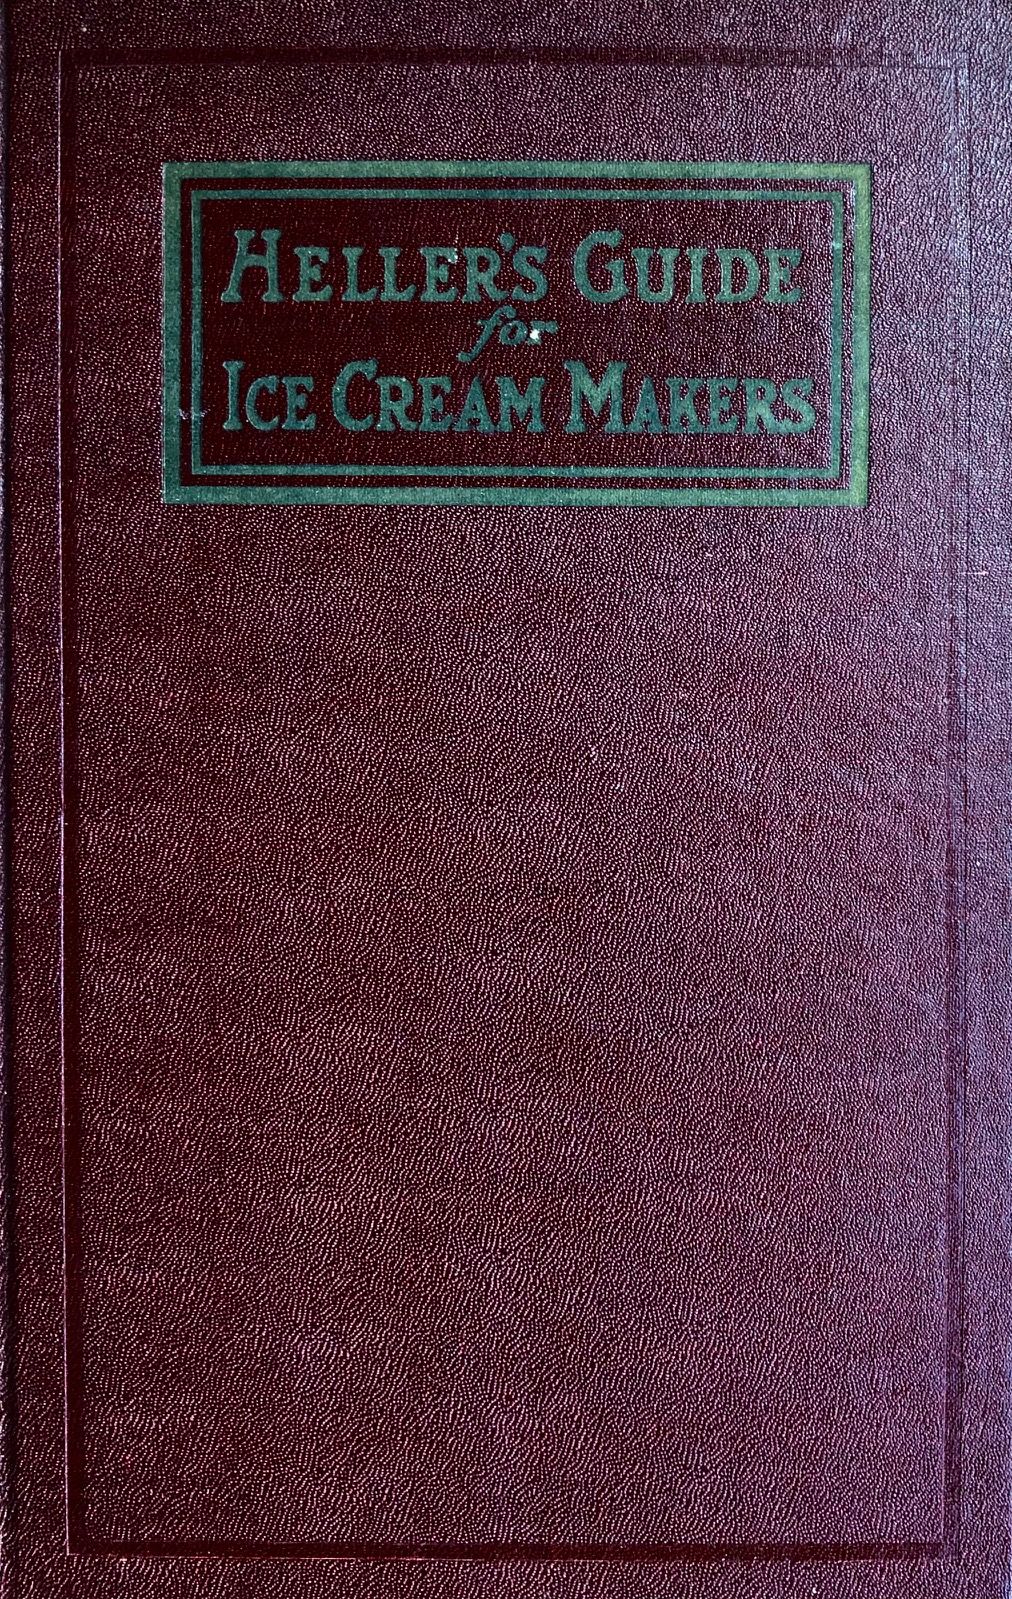 (Ice Cream) Heller, B.  Heller’s Guide for Ice-Cream Makers